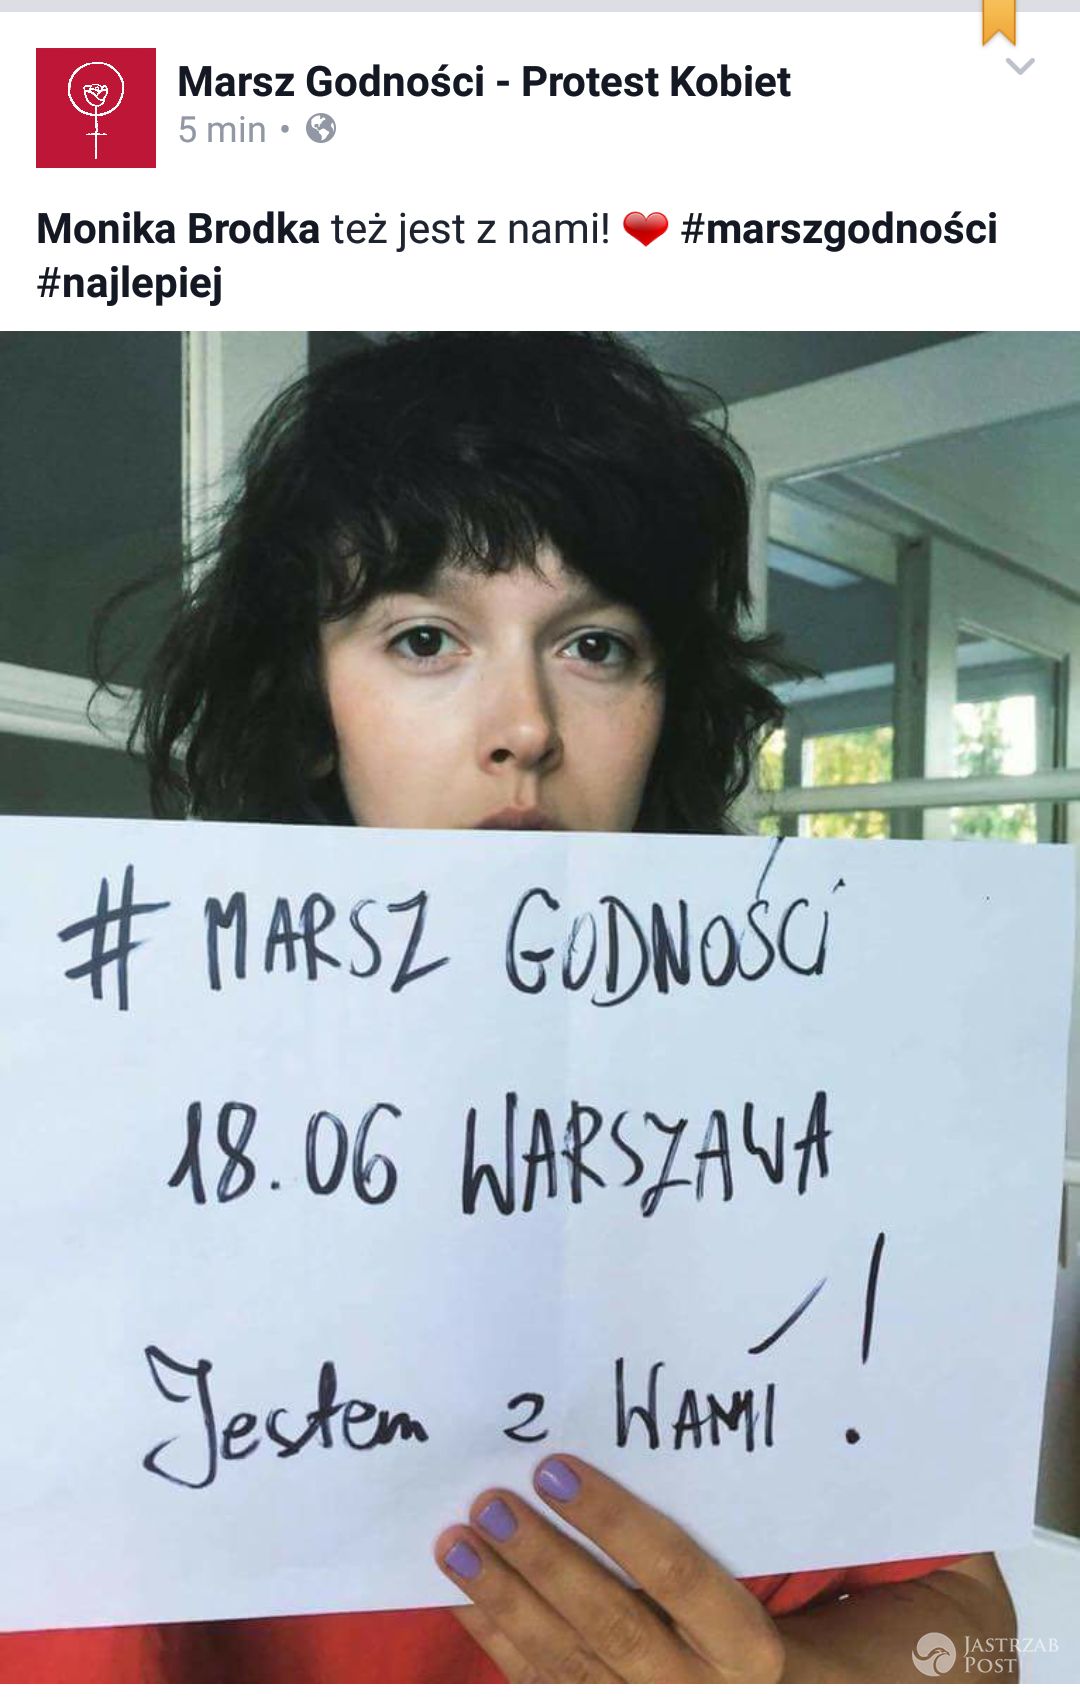 Monika Brodka wsparła Marsz Godności (fot. Facebook)